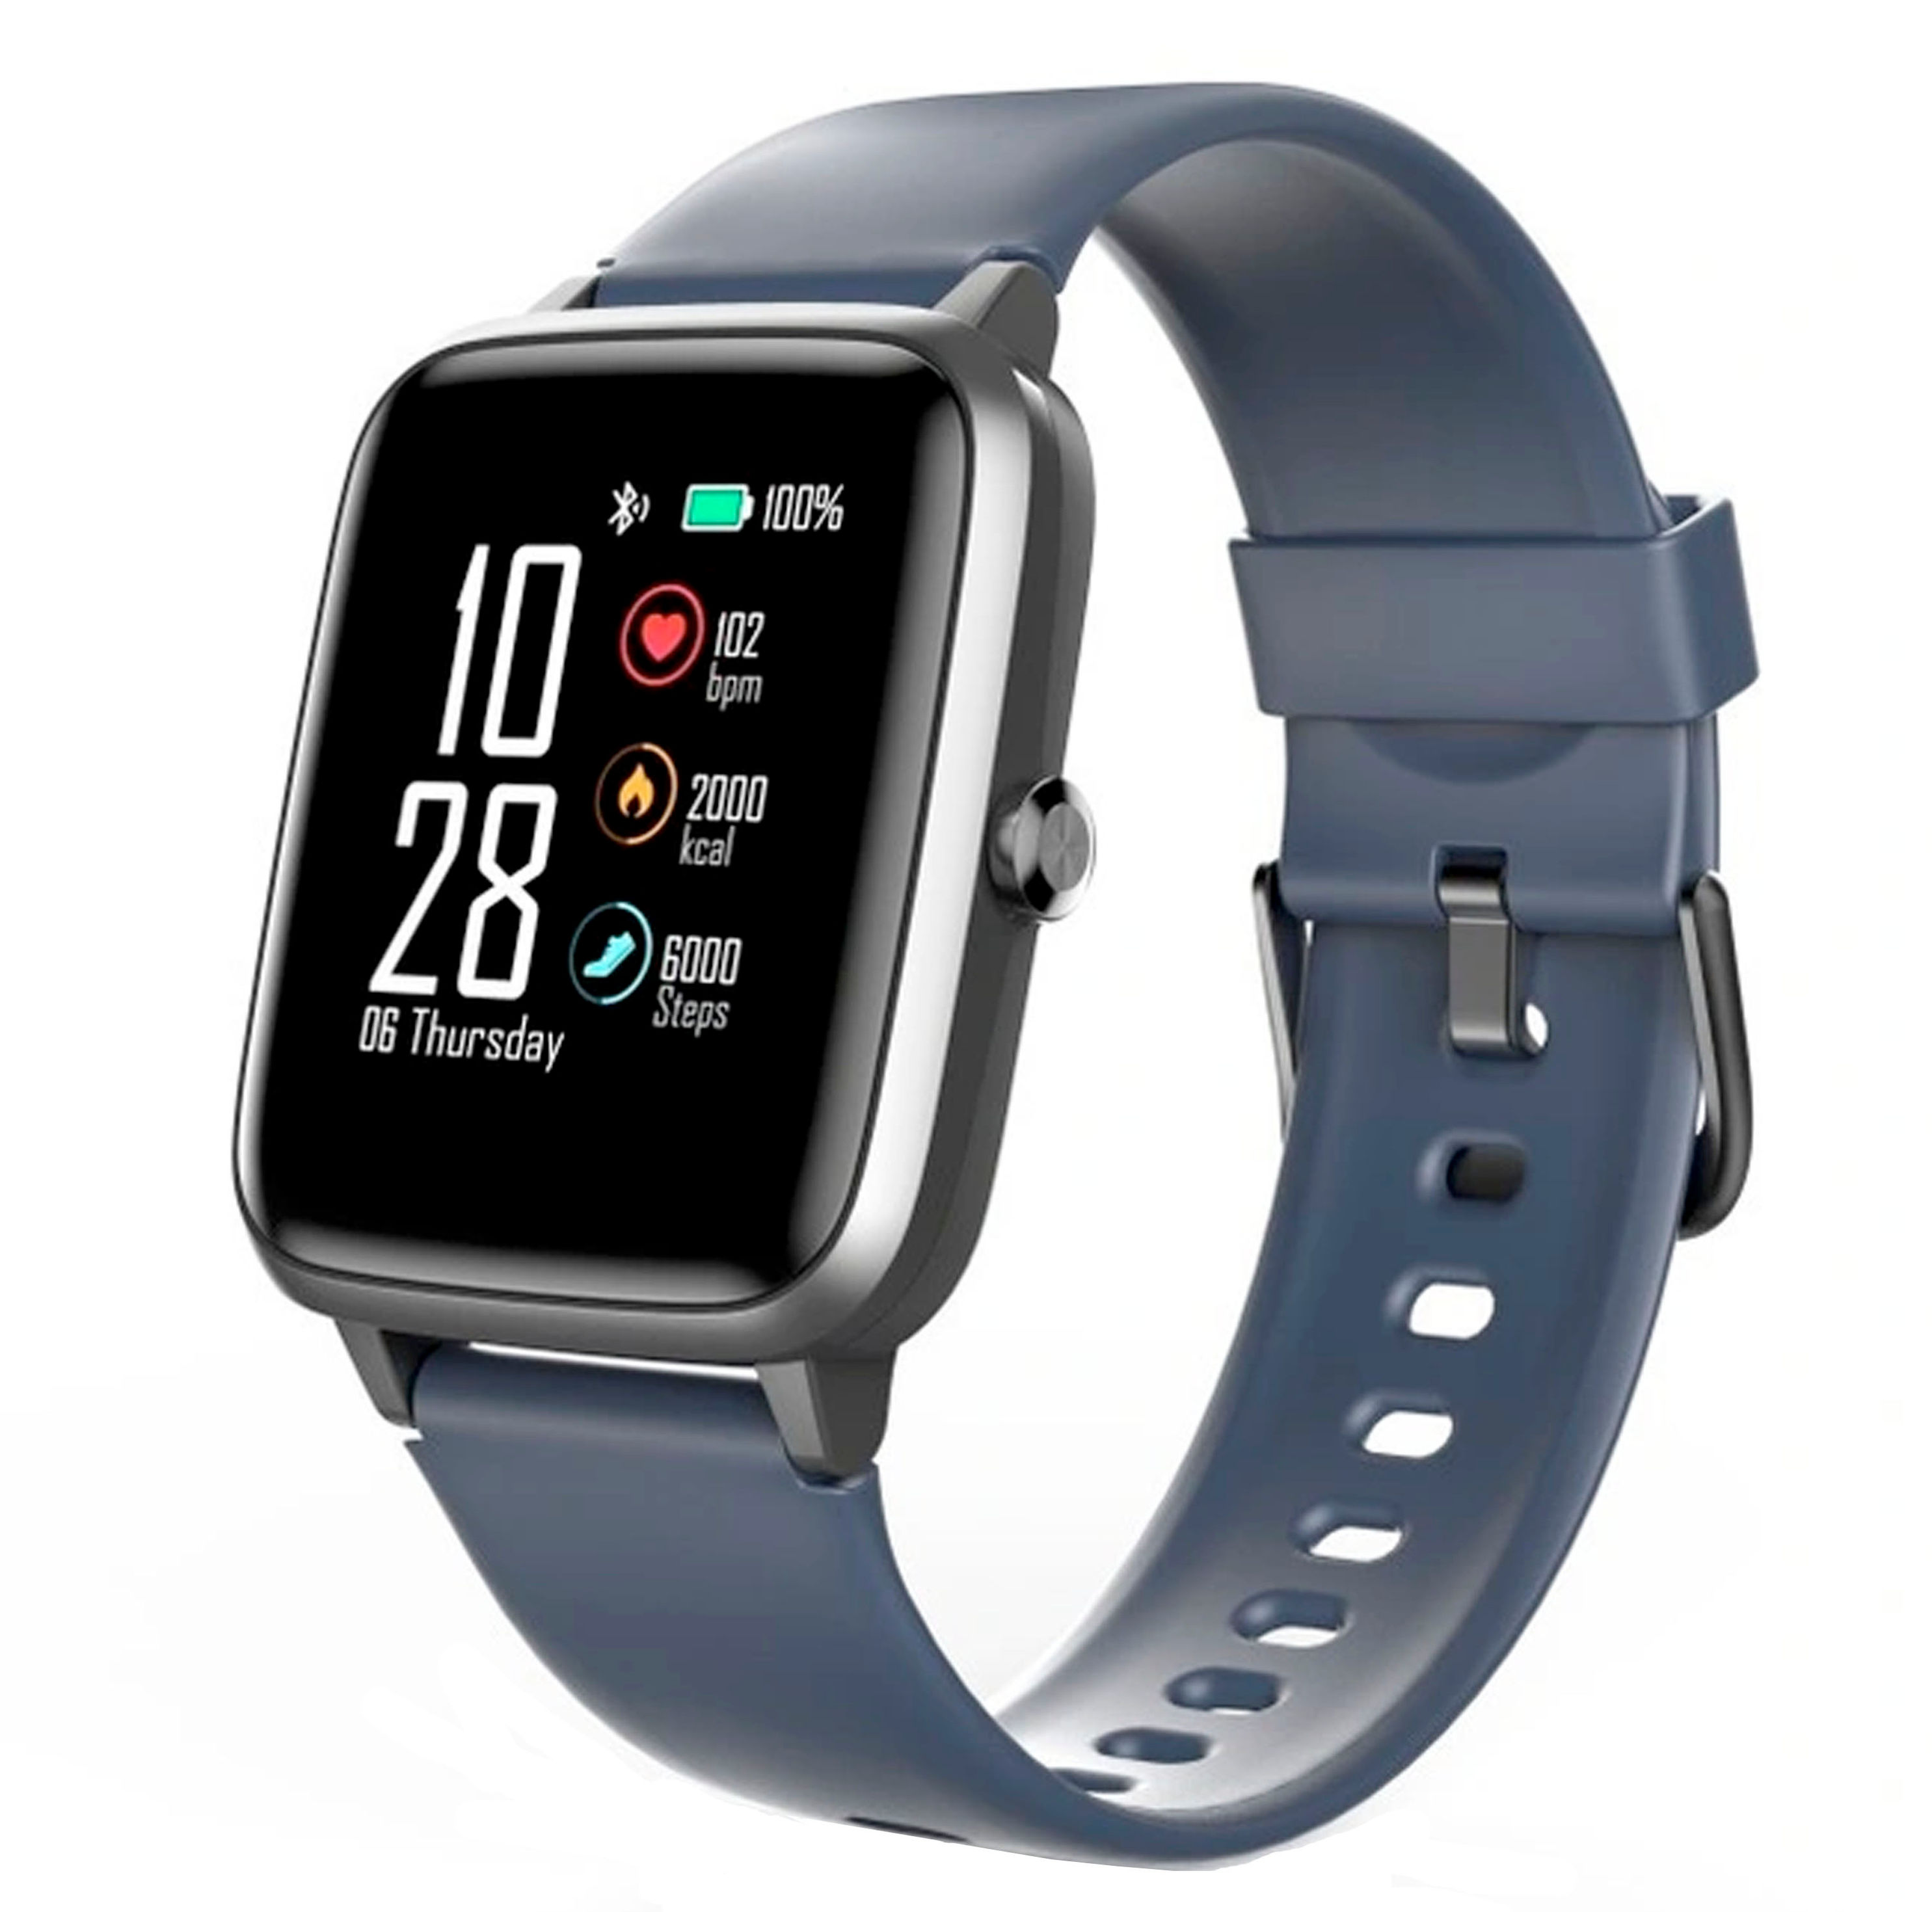 Hama Smartwatch Fit Watch 4900, wasserdicht, Schritte, Herzfrequenz, |  Weltbild.de